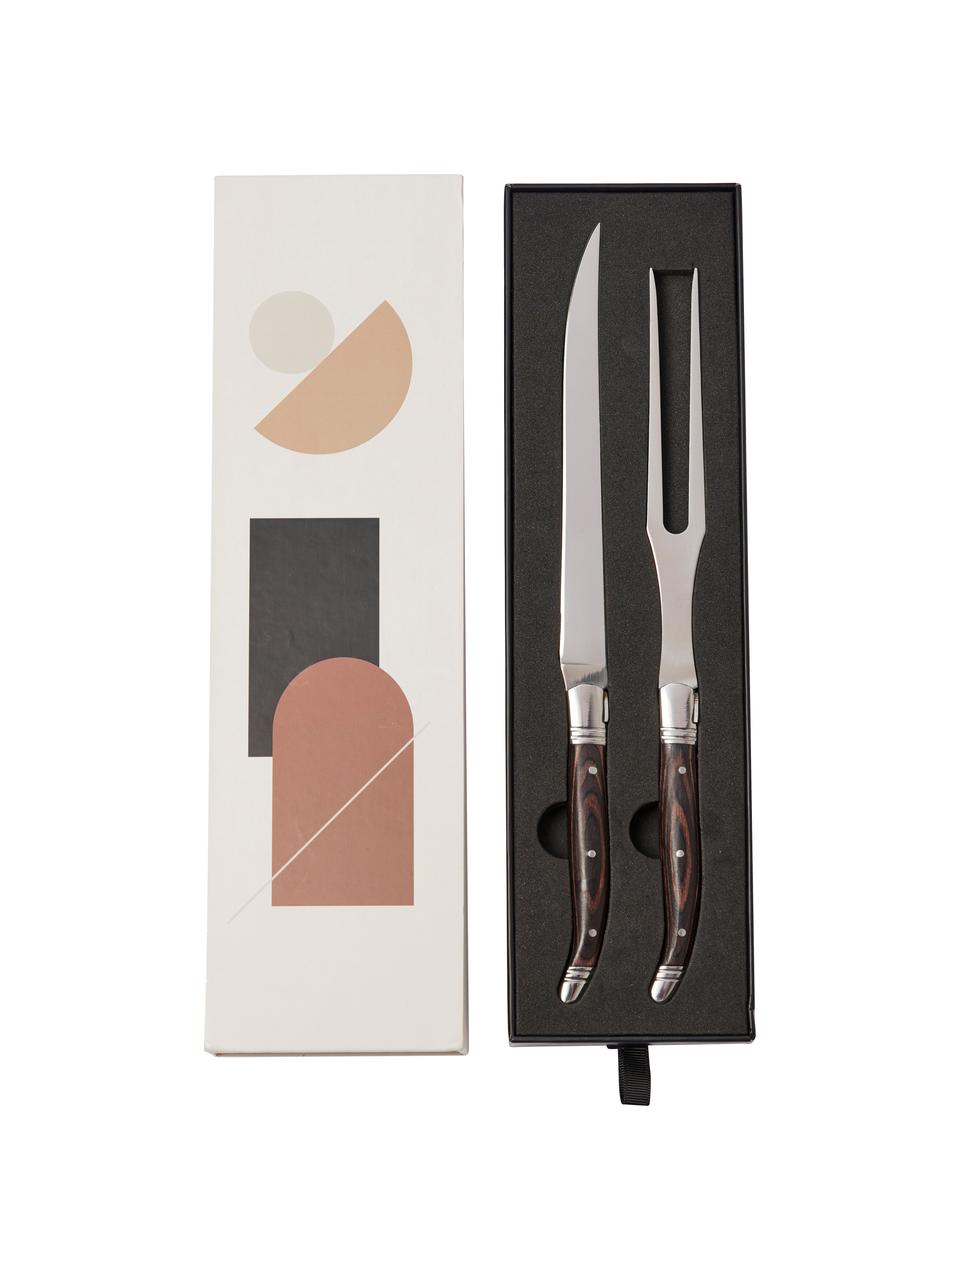 Steakbesteck Gigaro, 2er-Set, Besteck: Edelstahl, Griff: Pakkaholz, Dunkles Holz, Silberfarben, L 29 cm